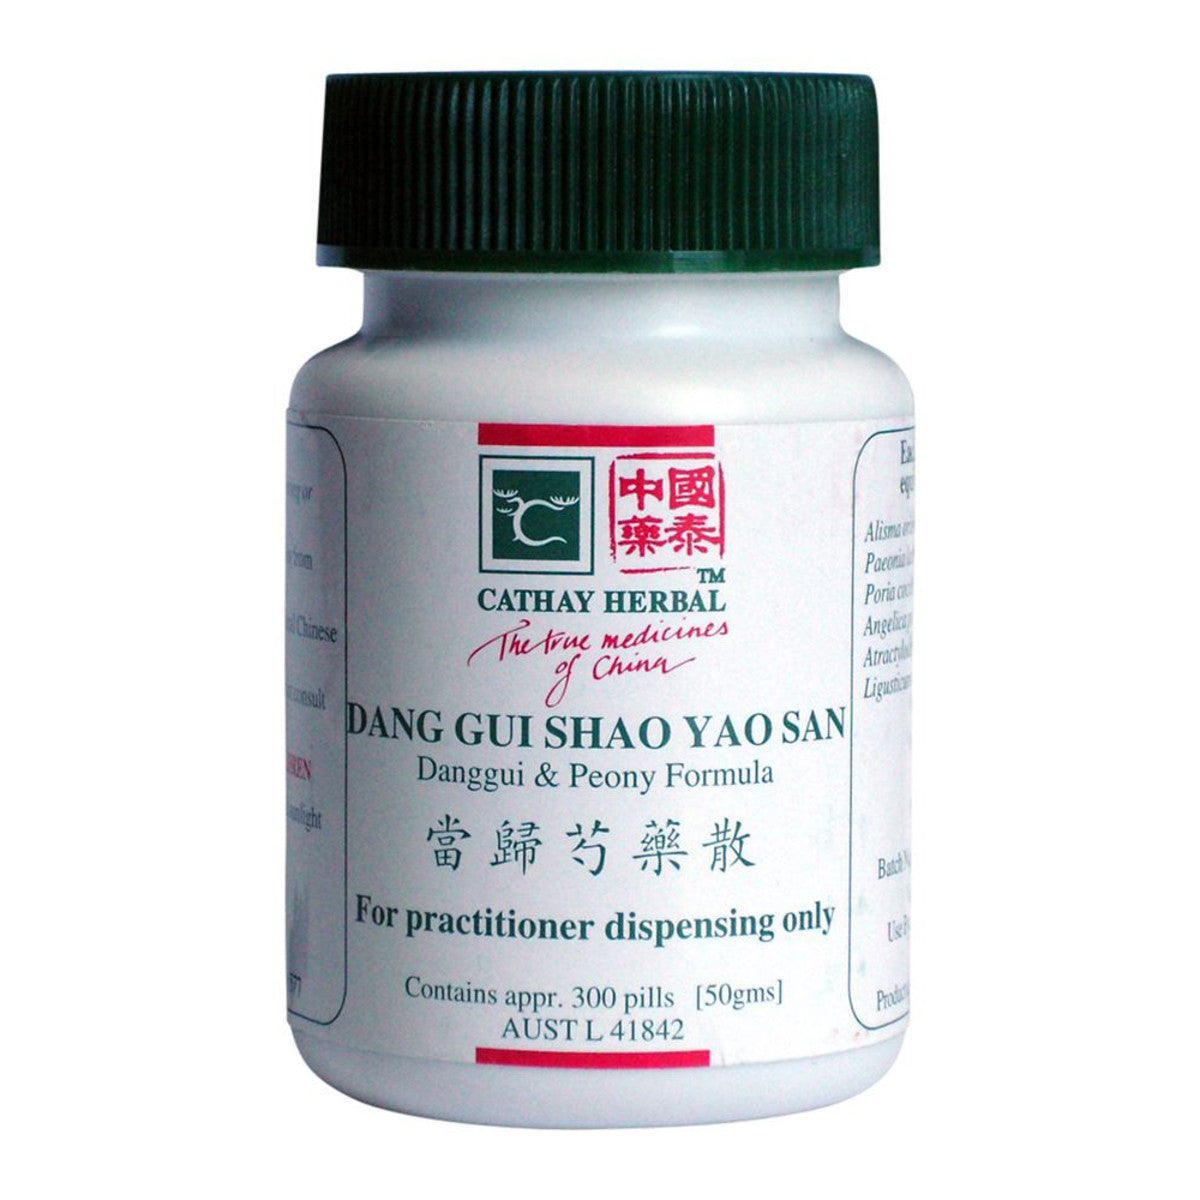 Cathay Herbal - Danggui and Peony Formula pill